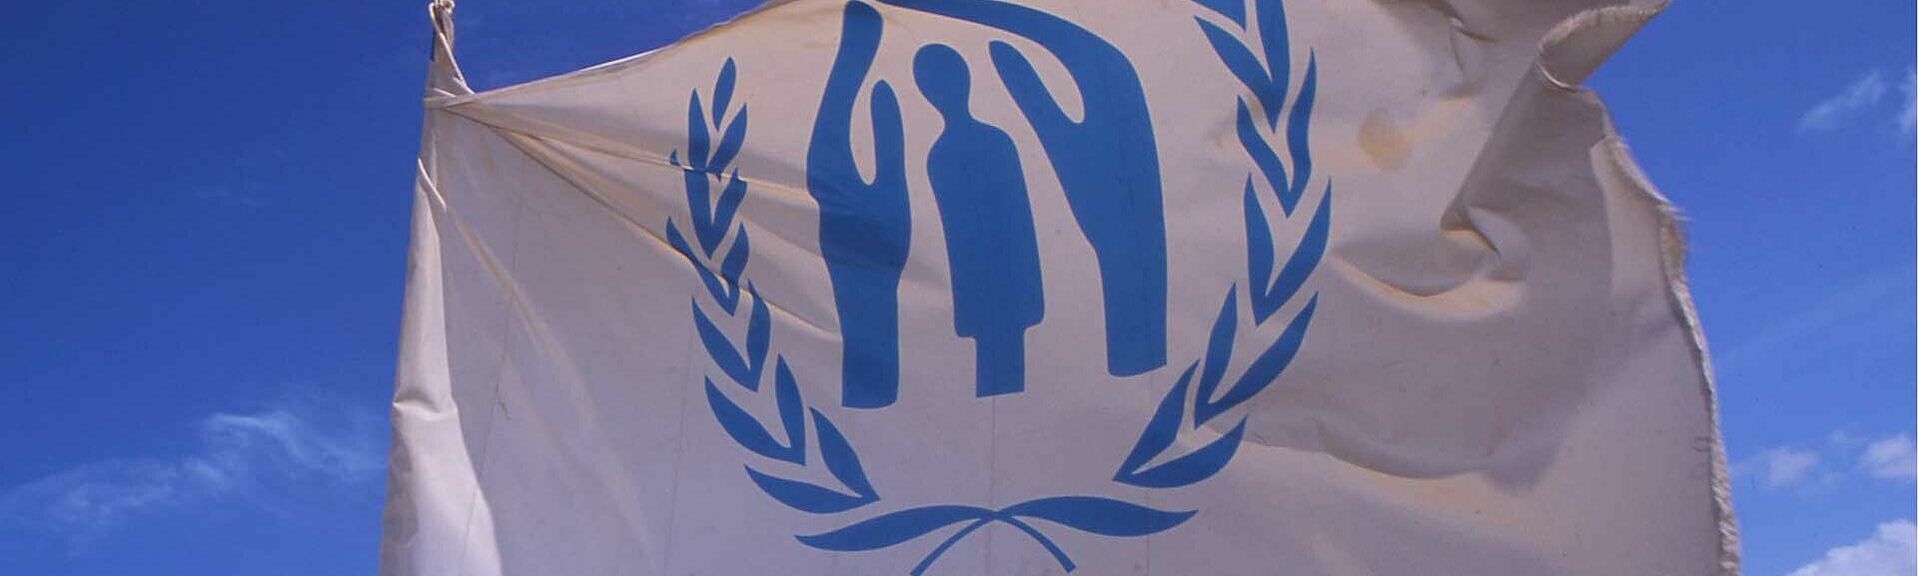 UNHCR Fahne